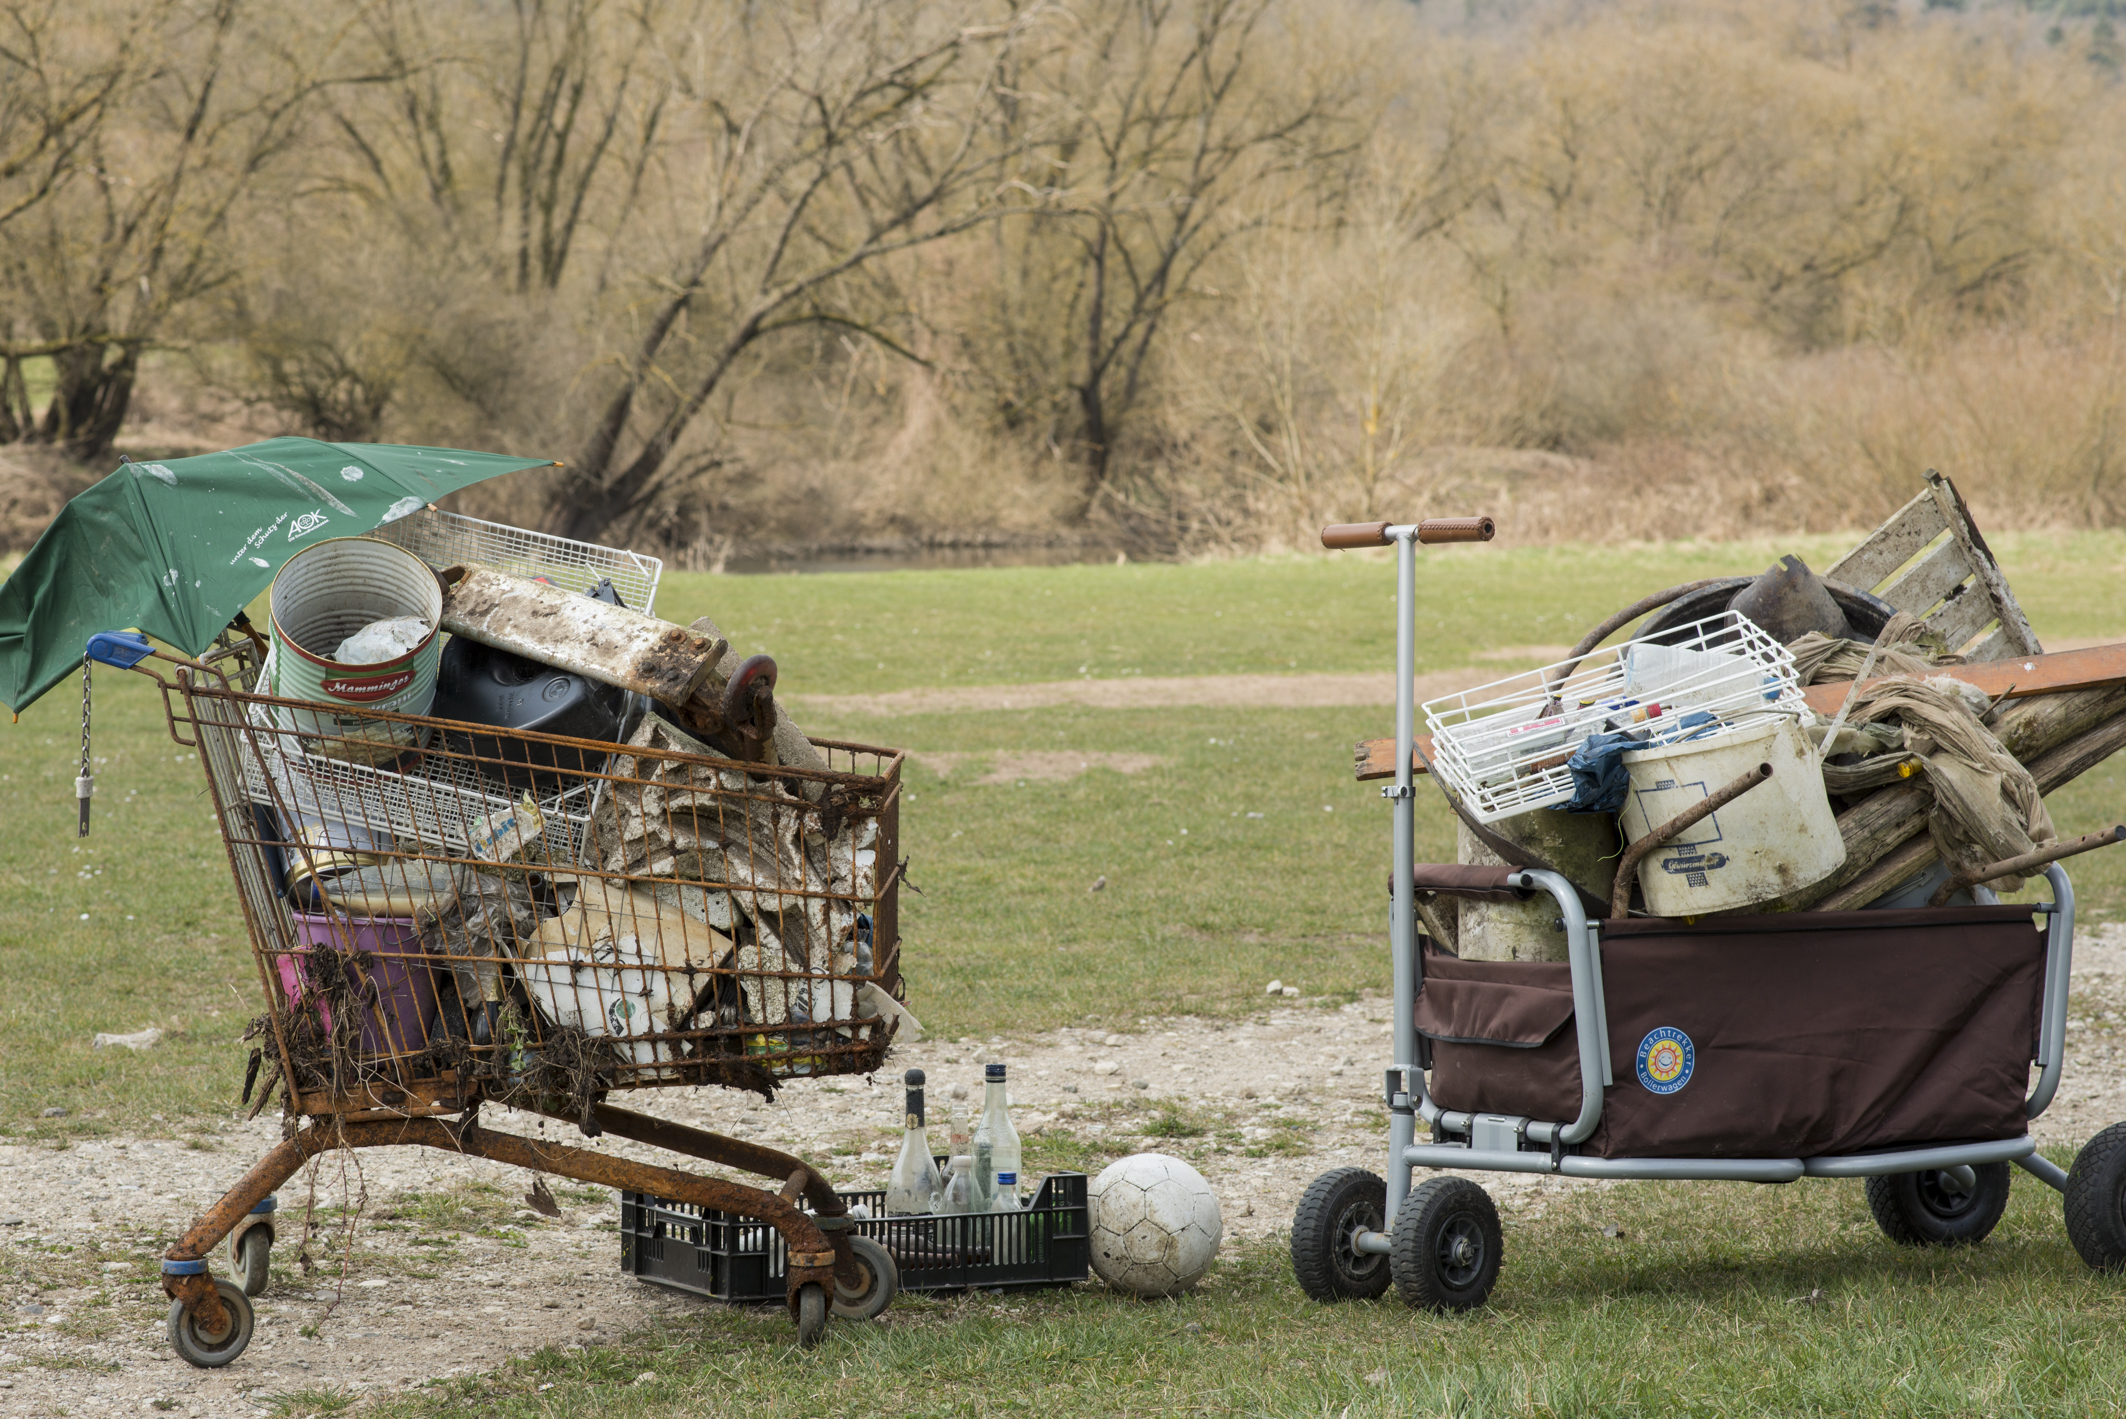 Der beim Müll sammeln gefundene Einkaufswagen wird noch ein letztes Mal sinnvoll verwendet, um den gefundenen Müll zu transportieren. Ansonsten kann ein Bollerwagen oder Fahrradanhänger nützlich sein. Foto: Thomas Ochs/Flussparadies Franken